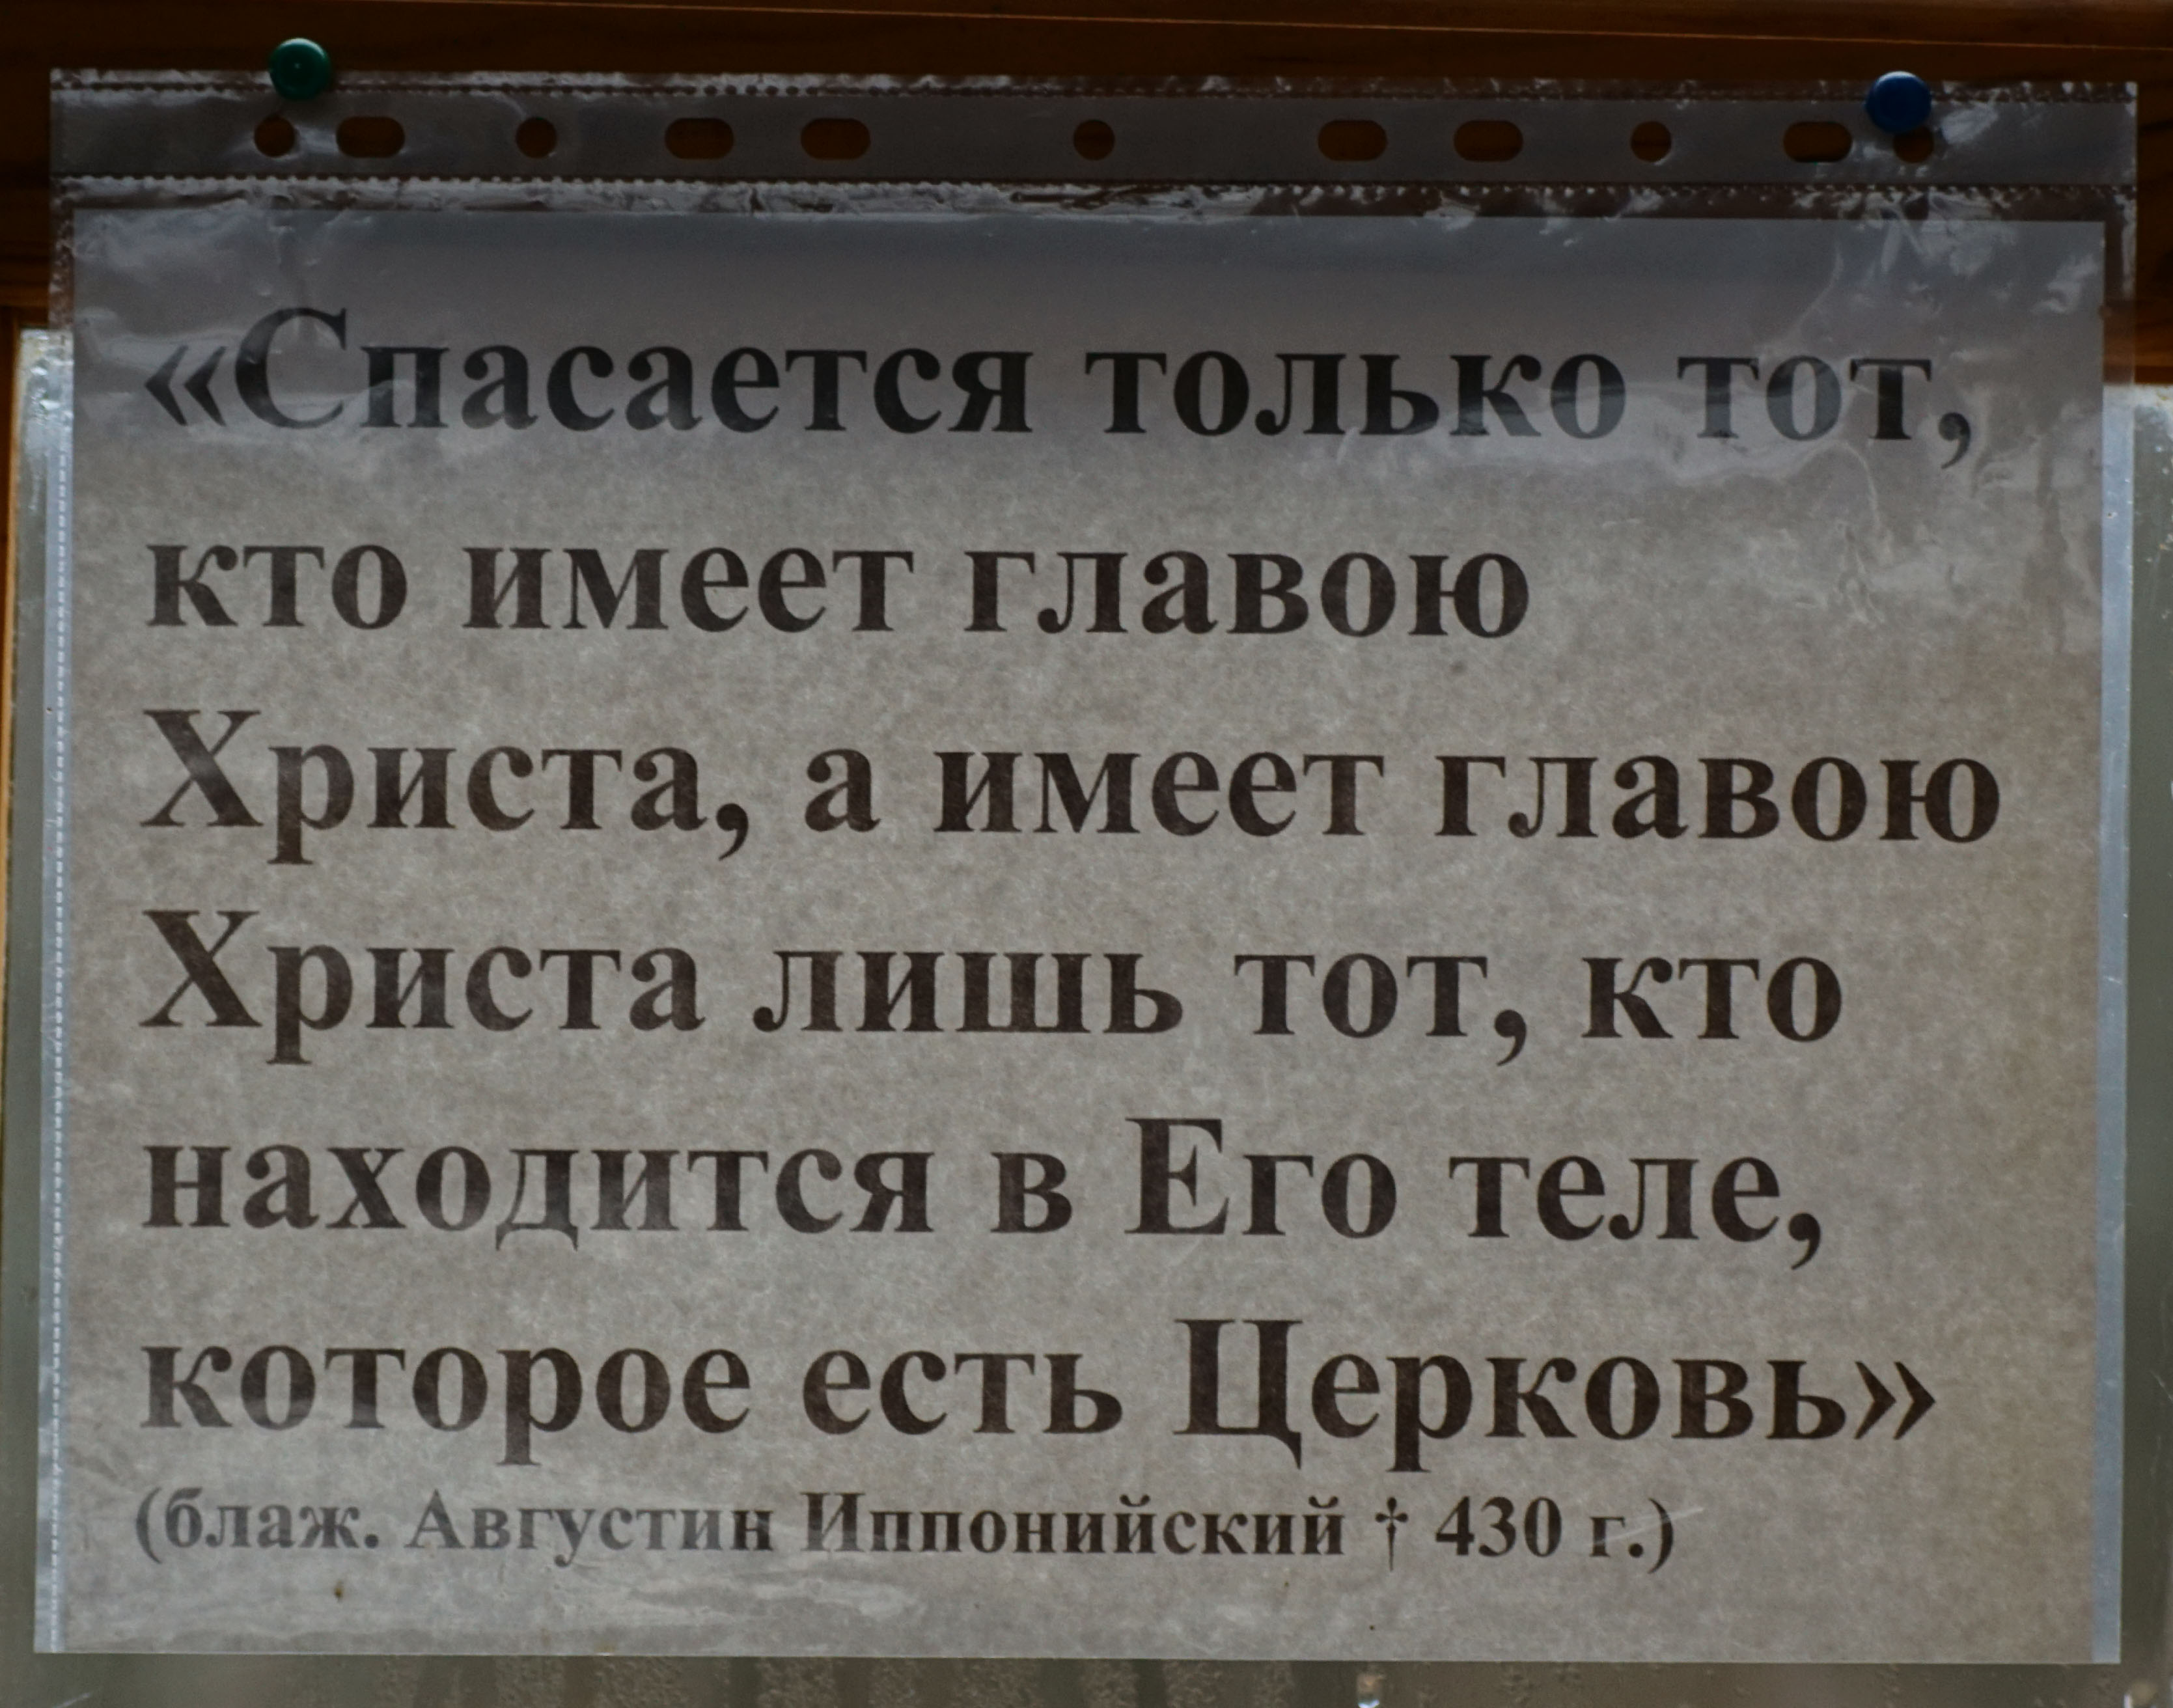 Лукино, Куньинский район, Псковская область. Крестовоздвиженская церковь. 1756 год.